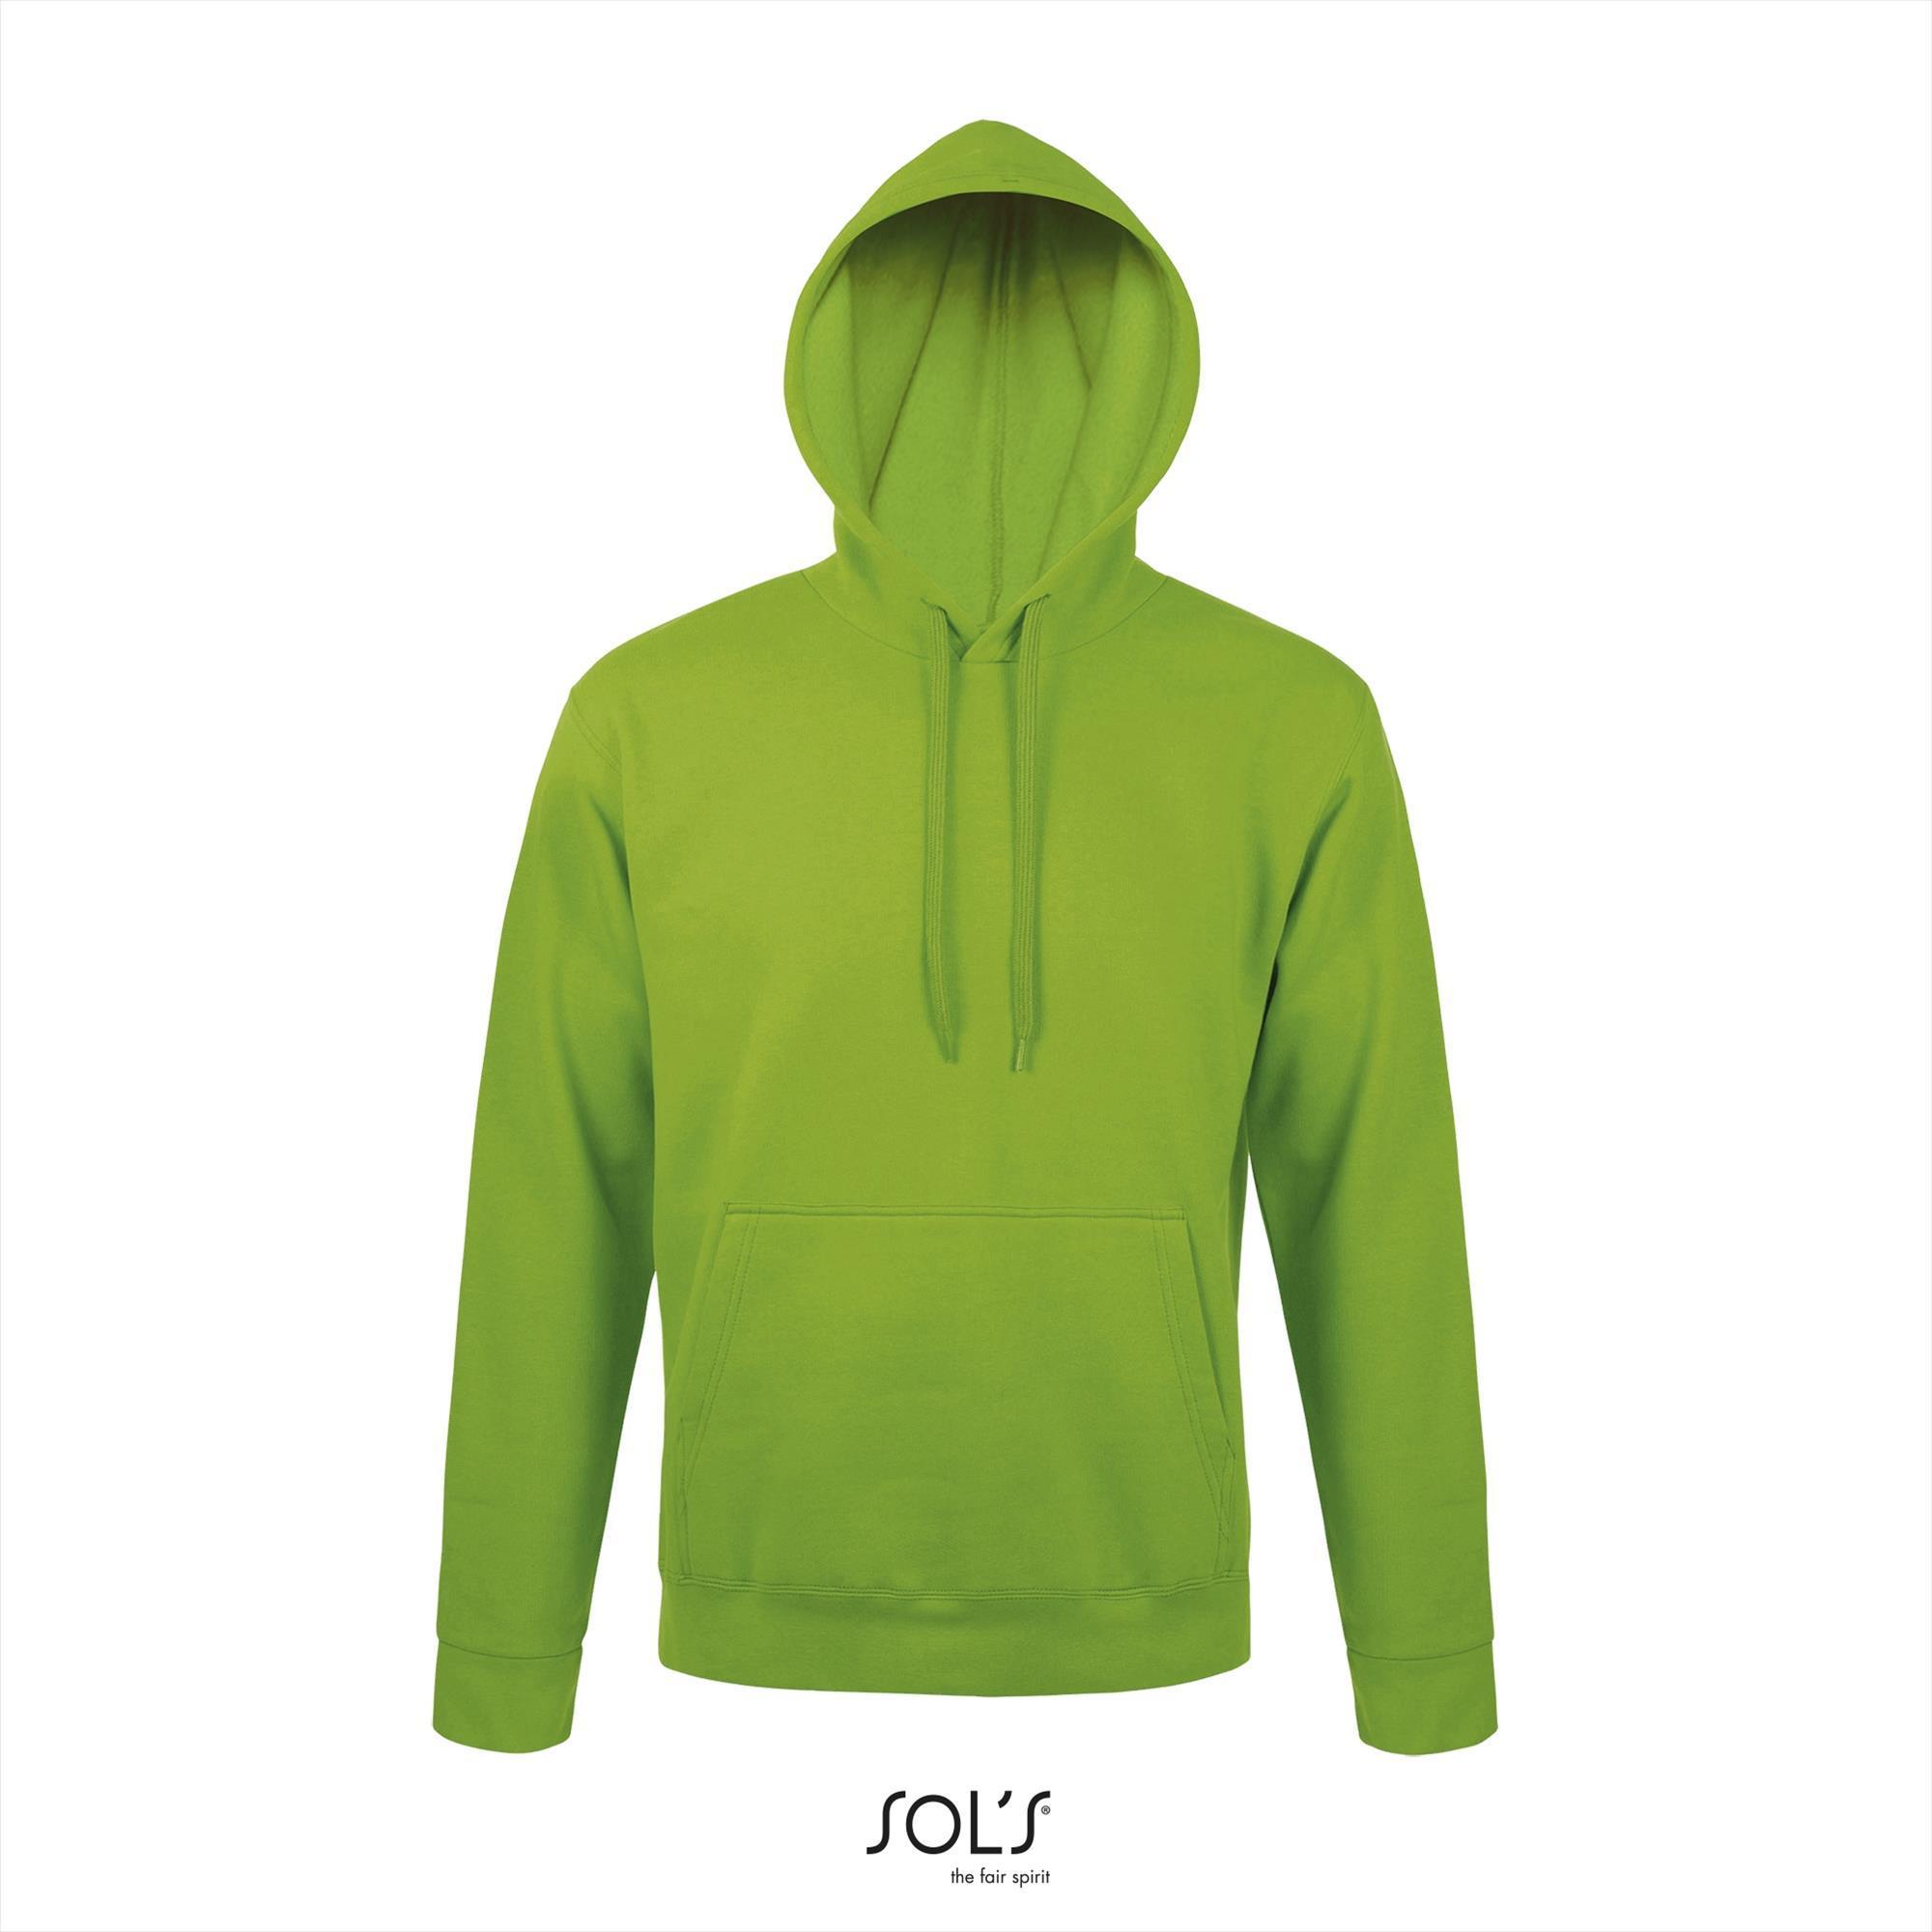 Lime groene hooded sweater voor mannen unisex groen